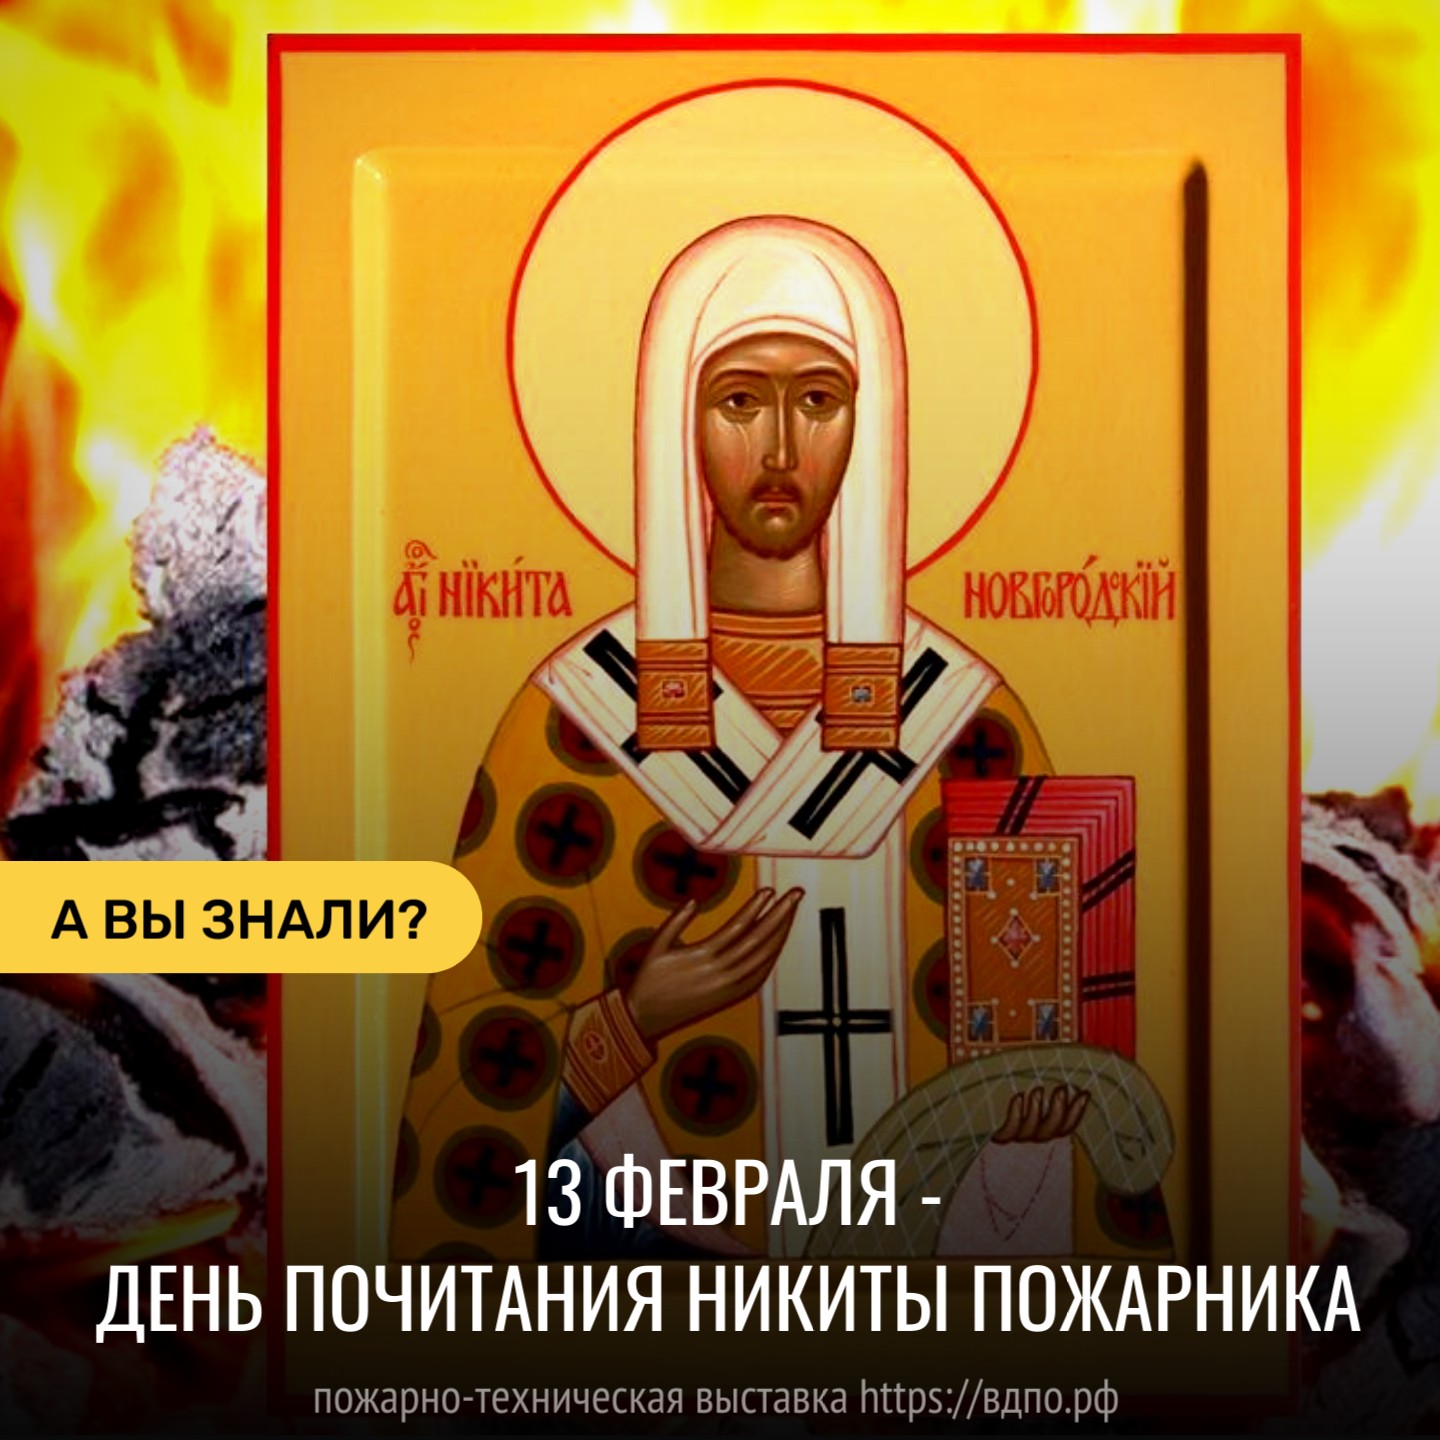 13 февраля - день почитания Никиты Пожарника  13 февраля православная церковь чтит память святителя Никиты, епископа Новгородского. В народном......